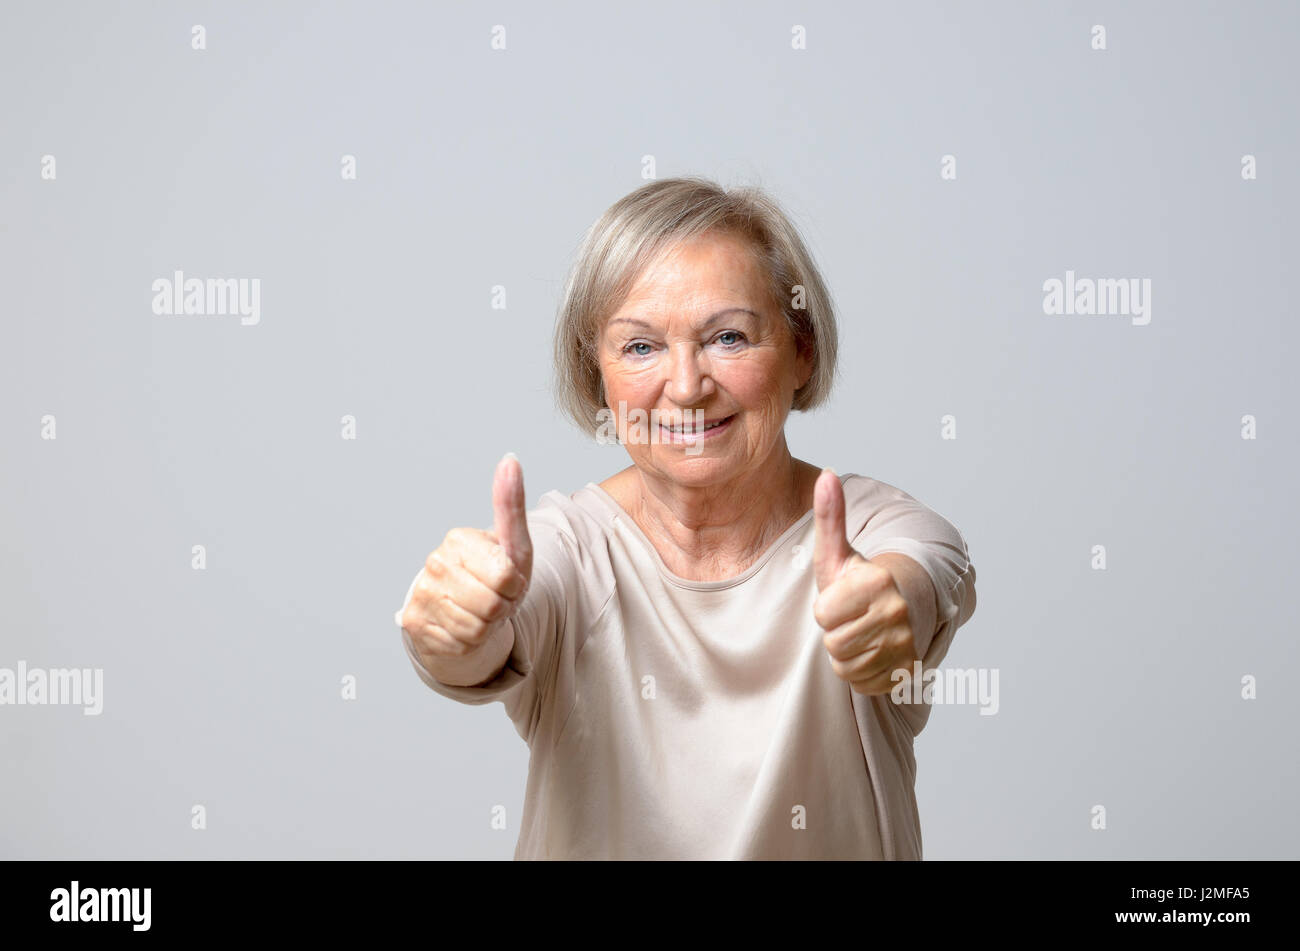 Ältere Frau 70 zeigt Daumen hoch Gesten mit beiden Händen, Blick in die Kamera und lächelnd, stehend auf einfachen grauen Hintergrund Stockfoto